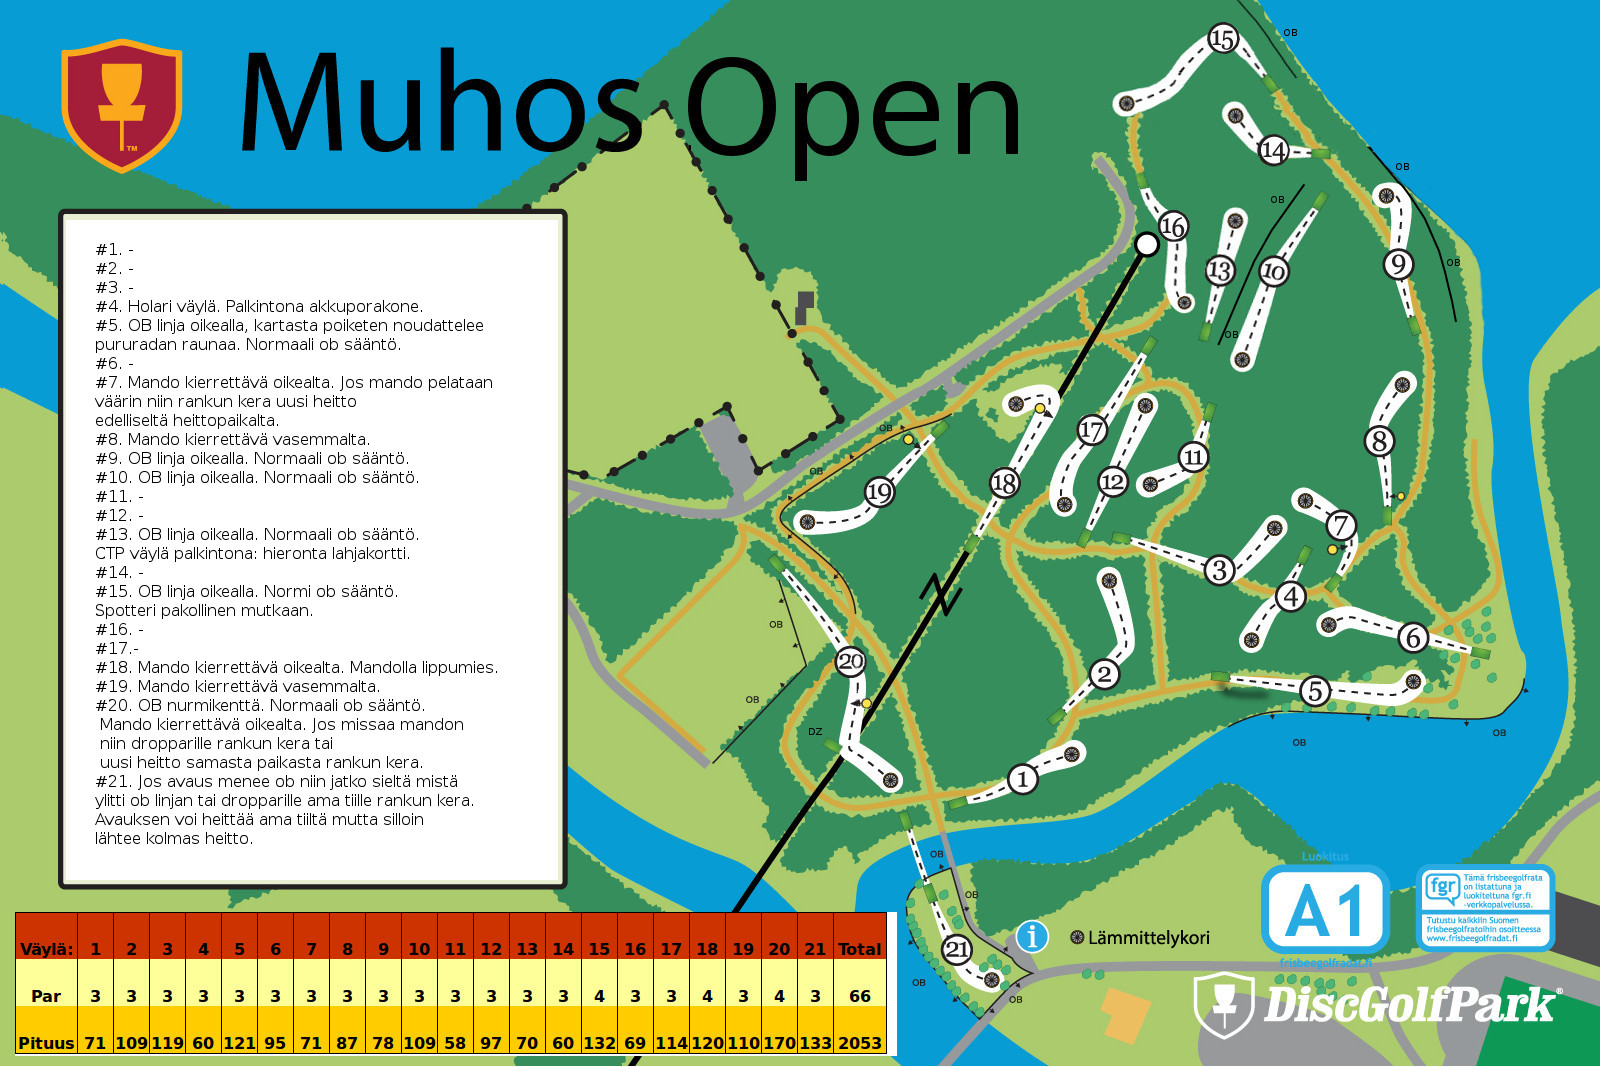 Muhos Open 2018 kisarata